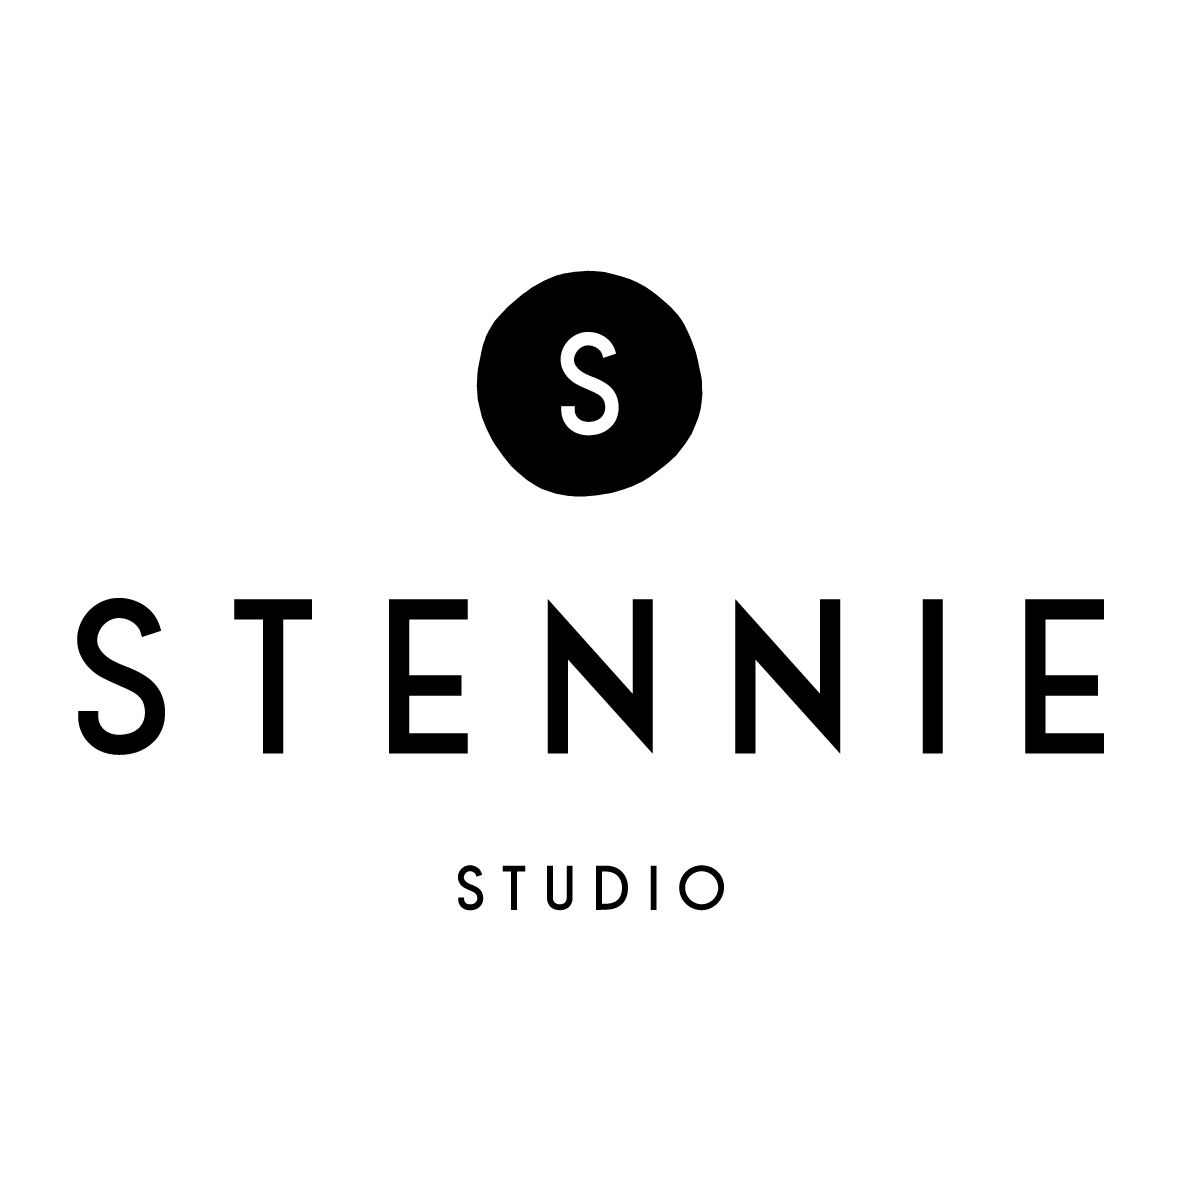 Stennie Studio Logo